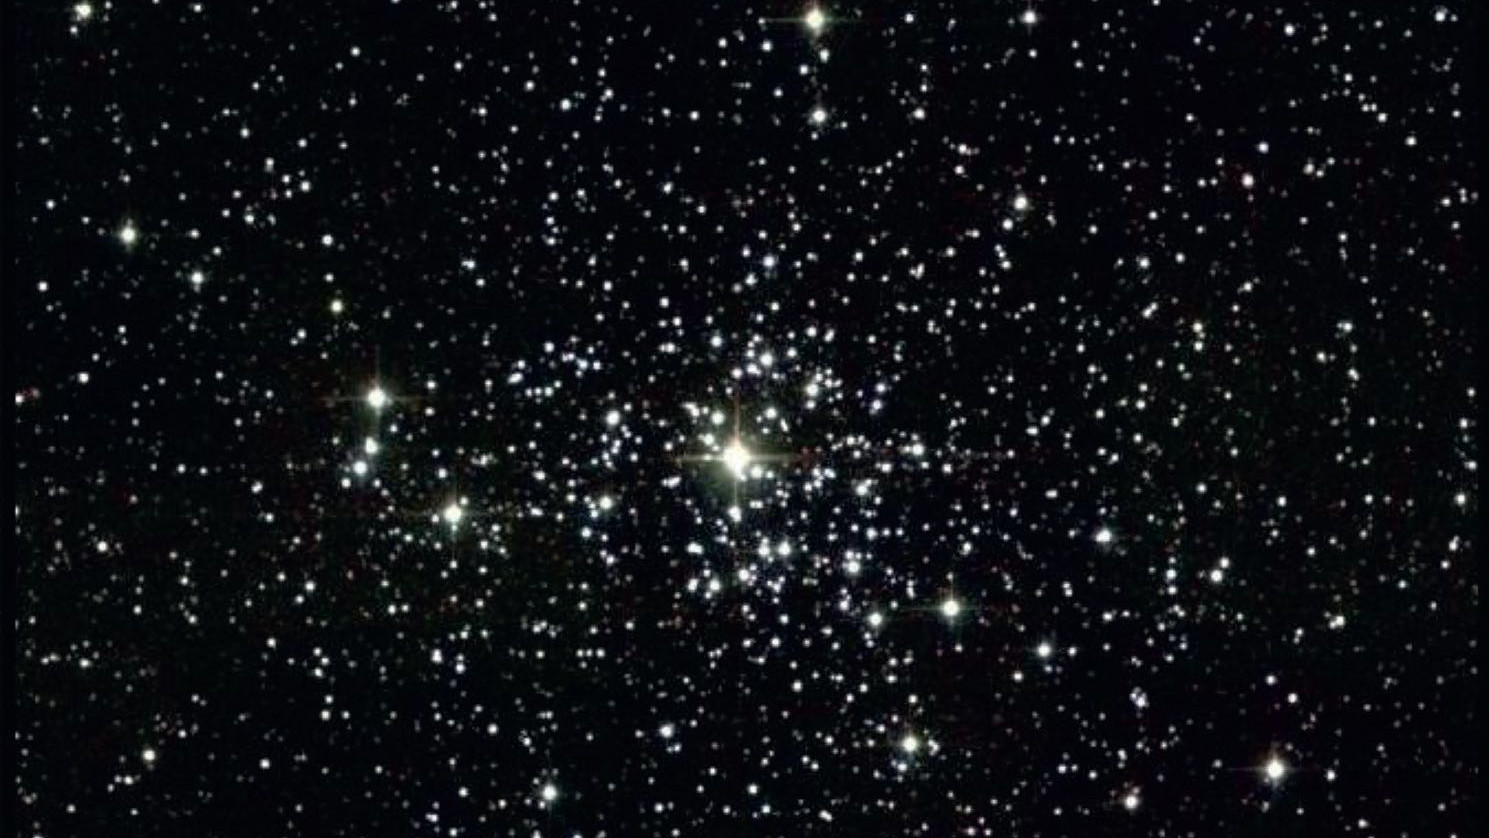 M 37 bei hoher Vergrößerung: Man glaubt, mitten in einem Meer aus Sternen zu stehen. 2MASS